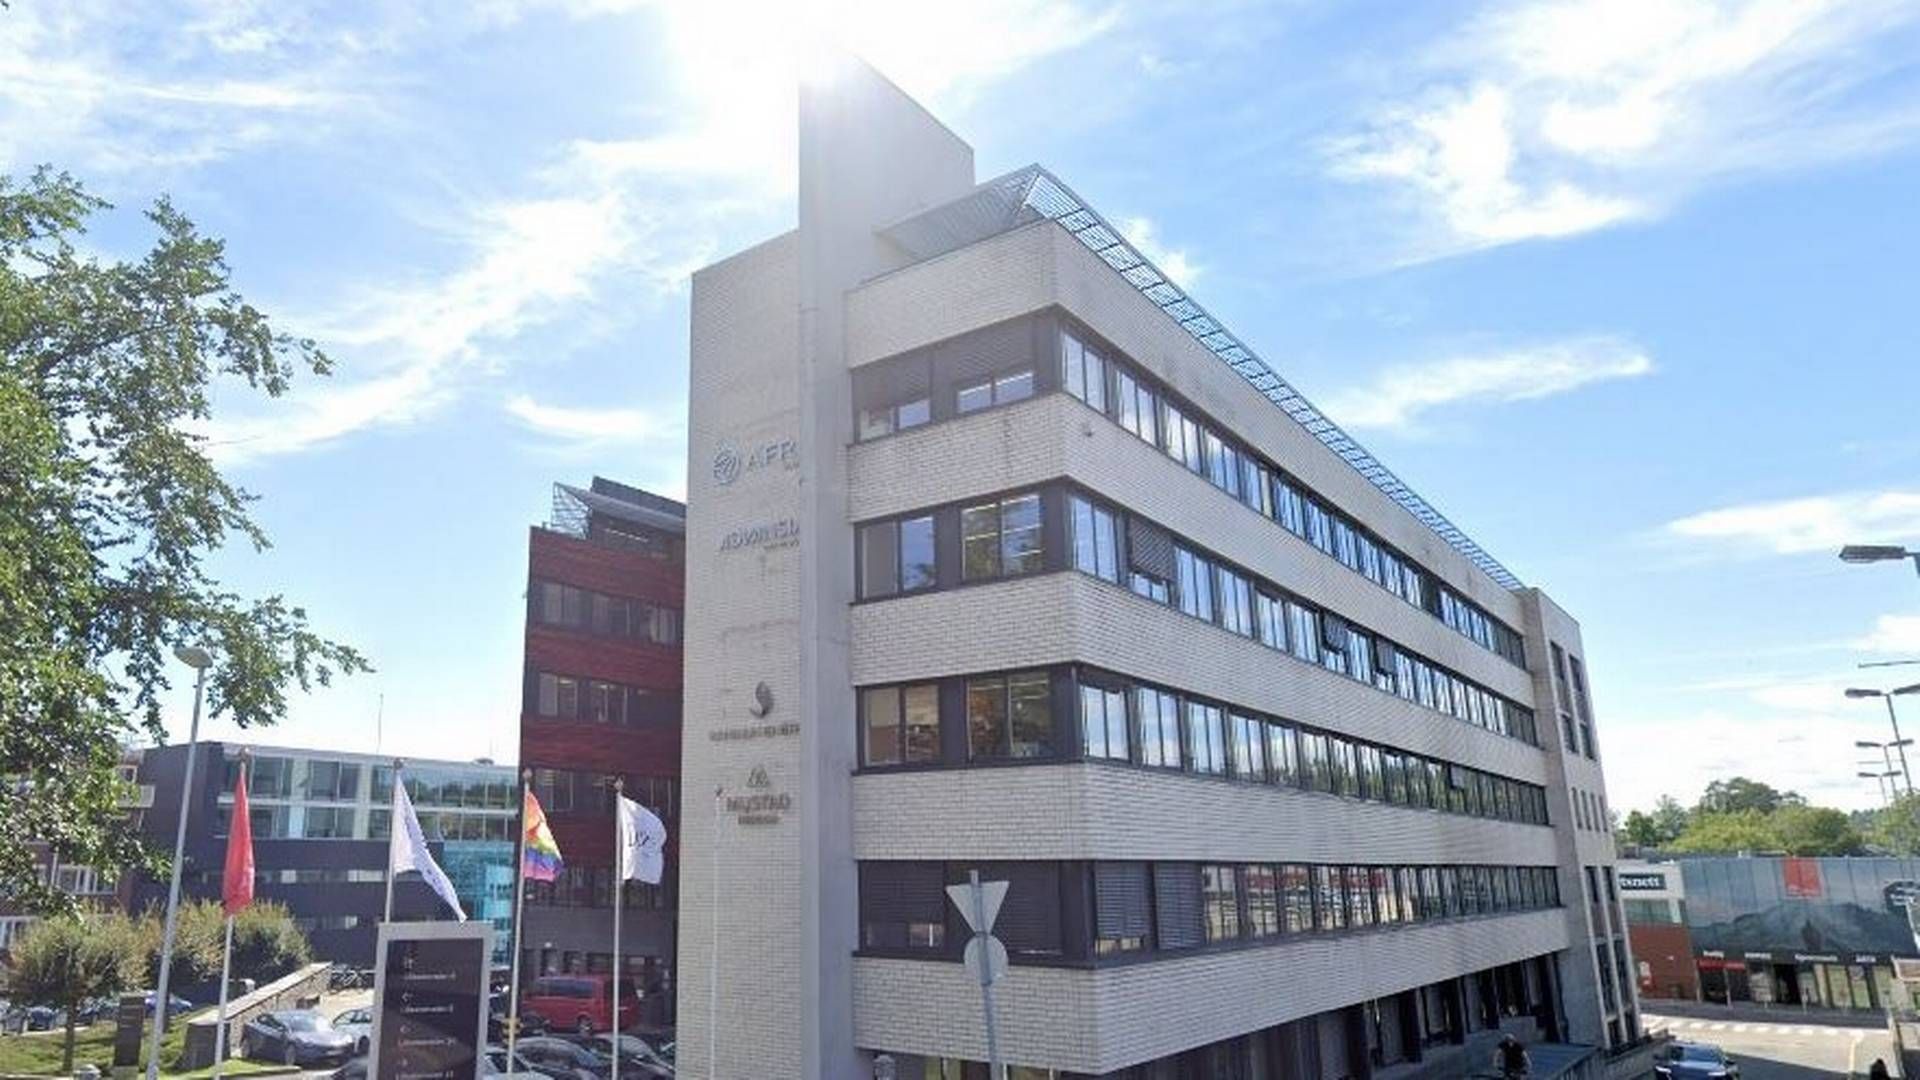 Advansia sitt kontor i hovedstaden og på østlandsområdet ligger i Lilleakerveien 8 i Oslo. | Foto: Google Street View